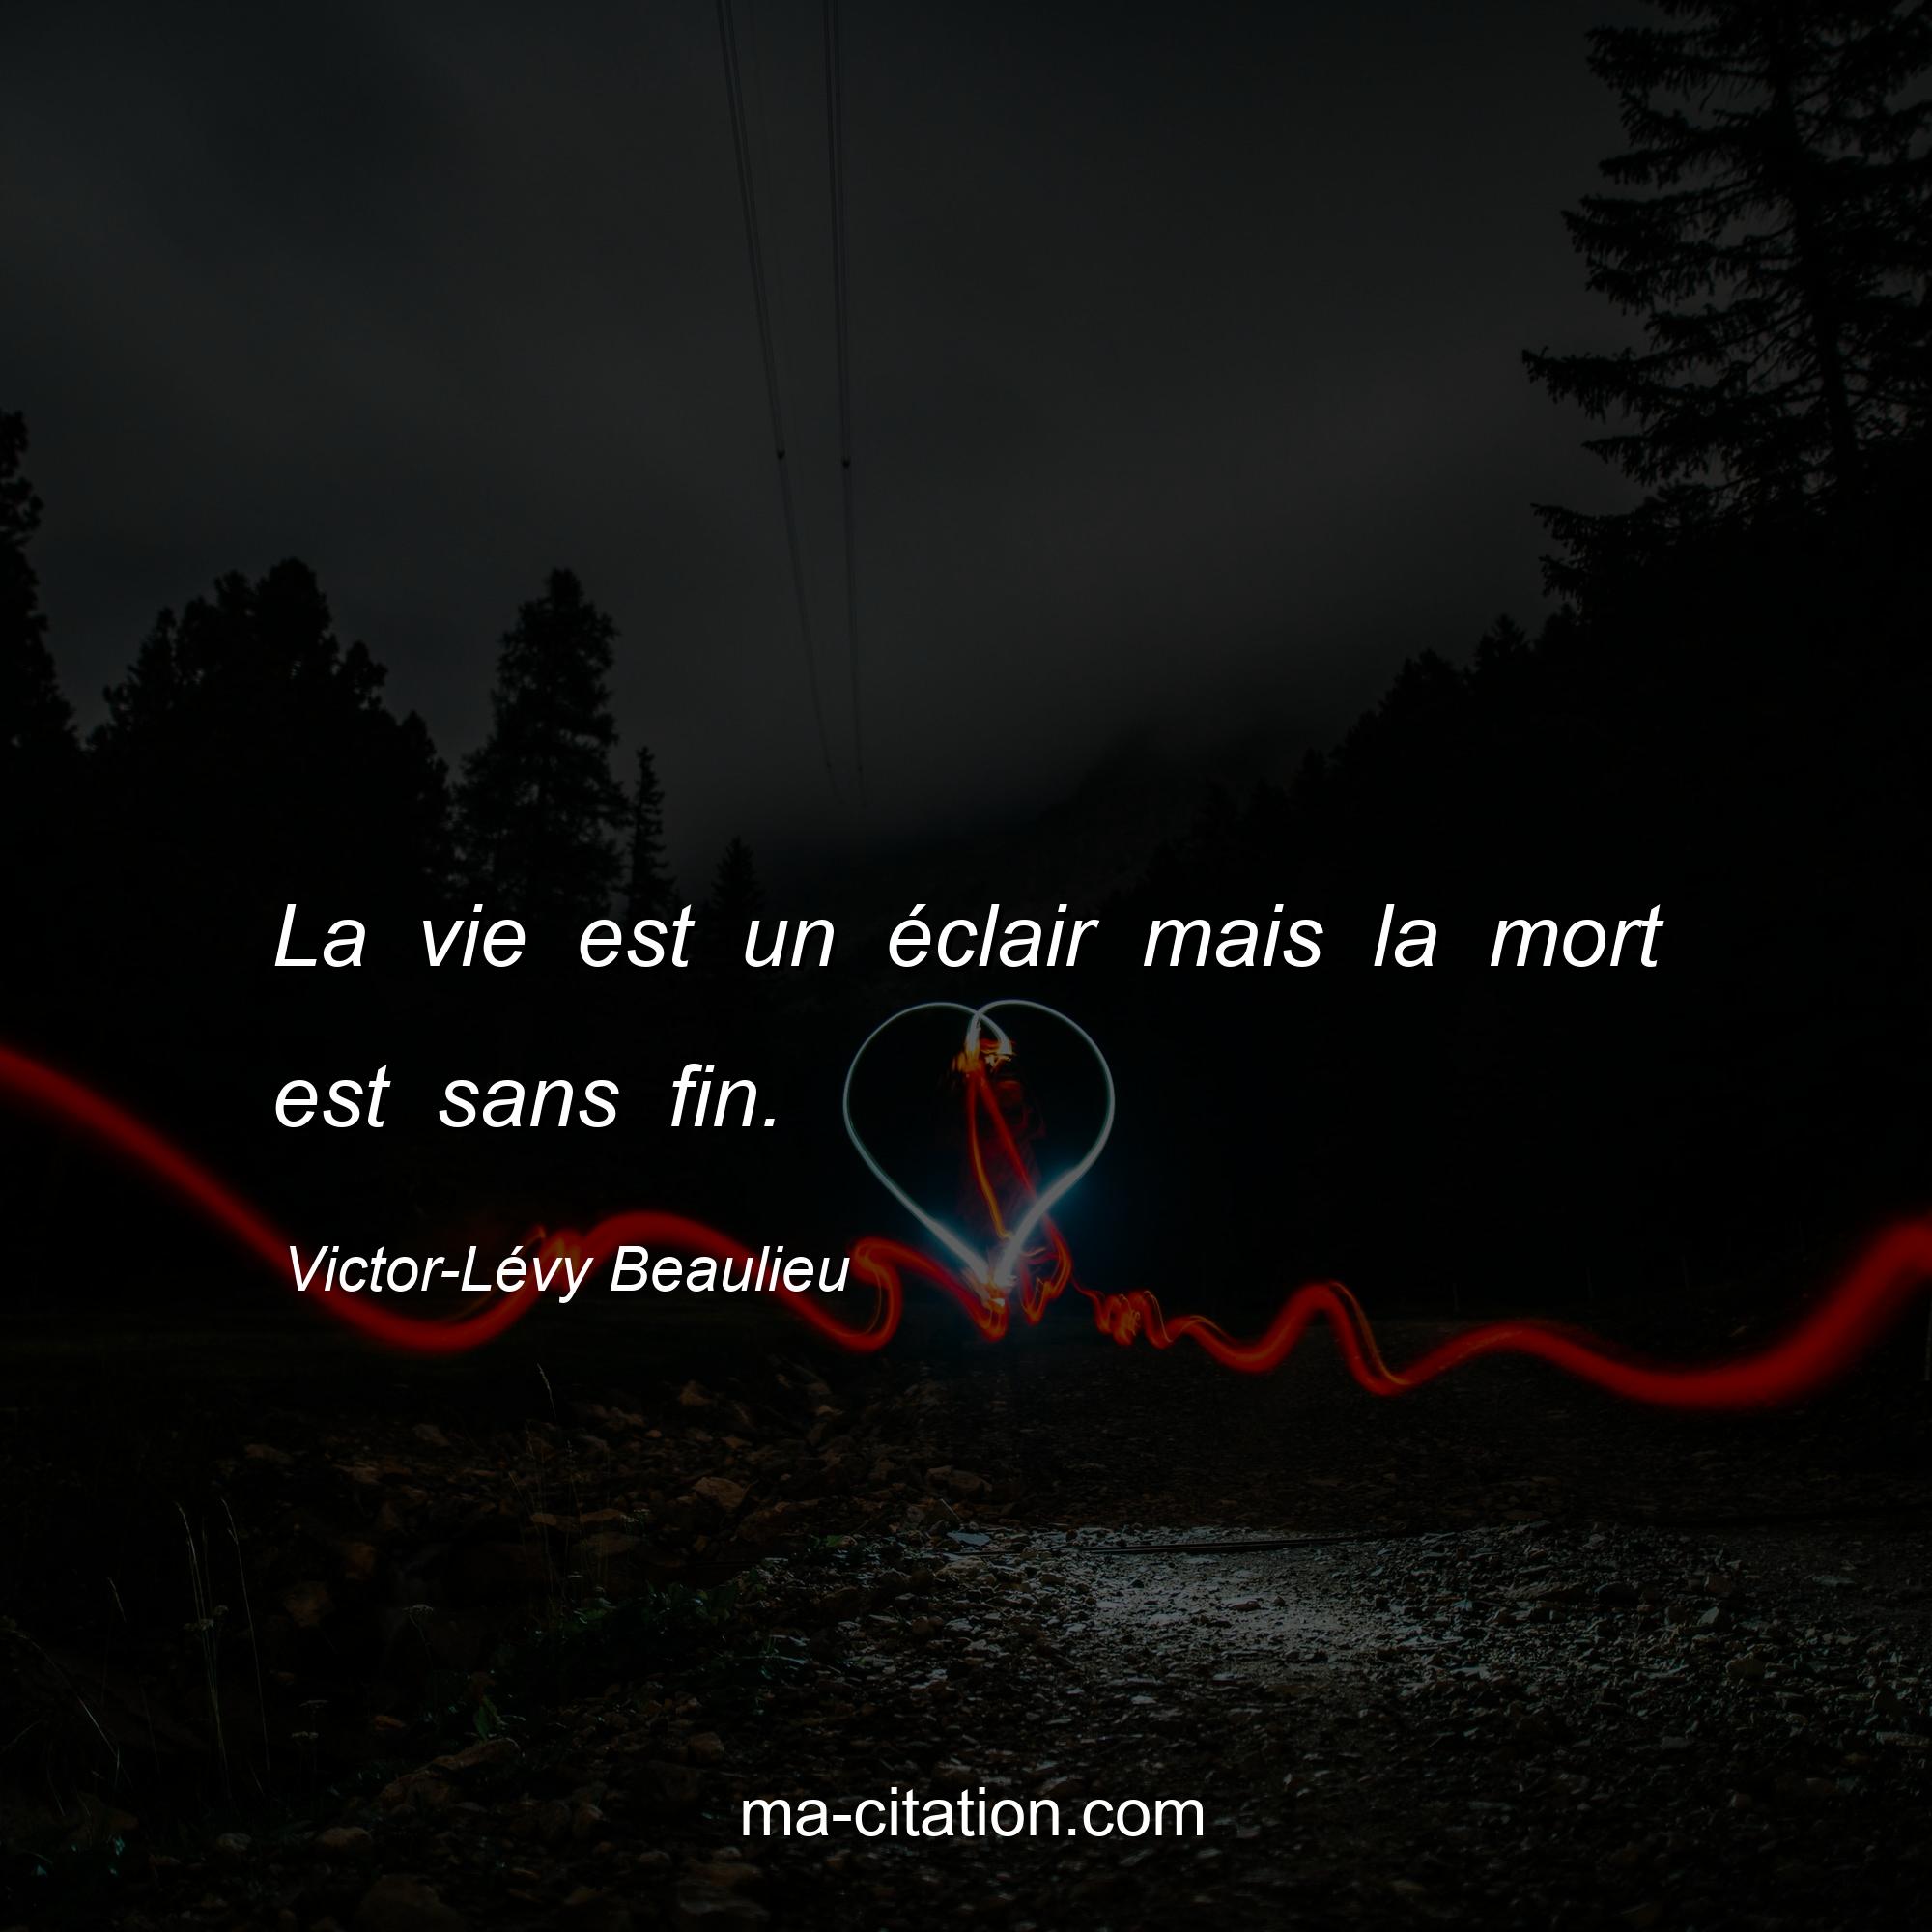 Victor-Lévy Beaulieu : La vie est un éclair mais la mort est sans fin.